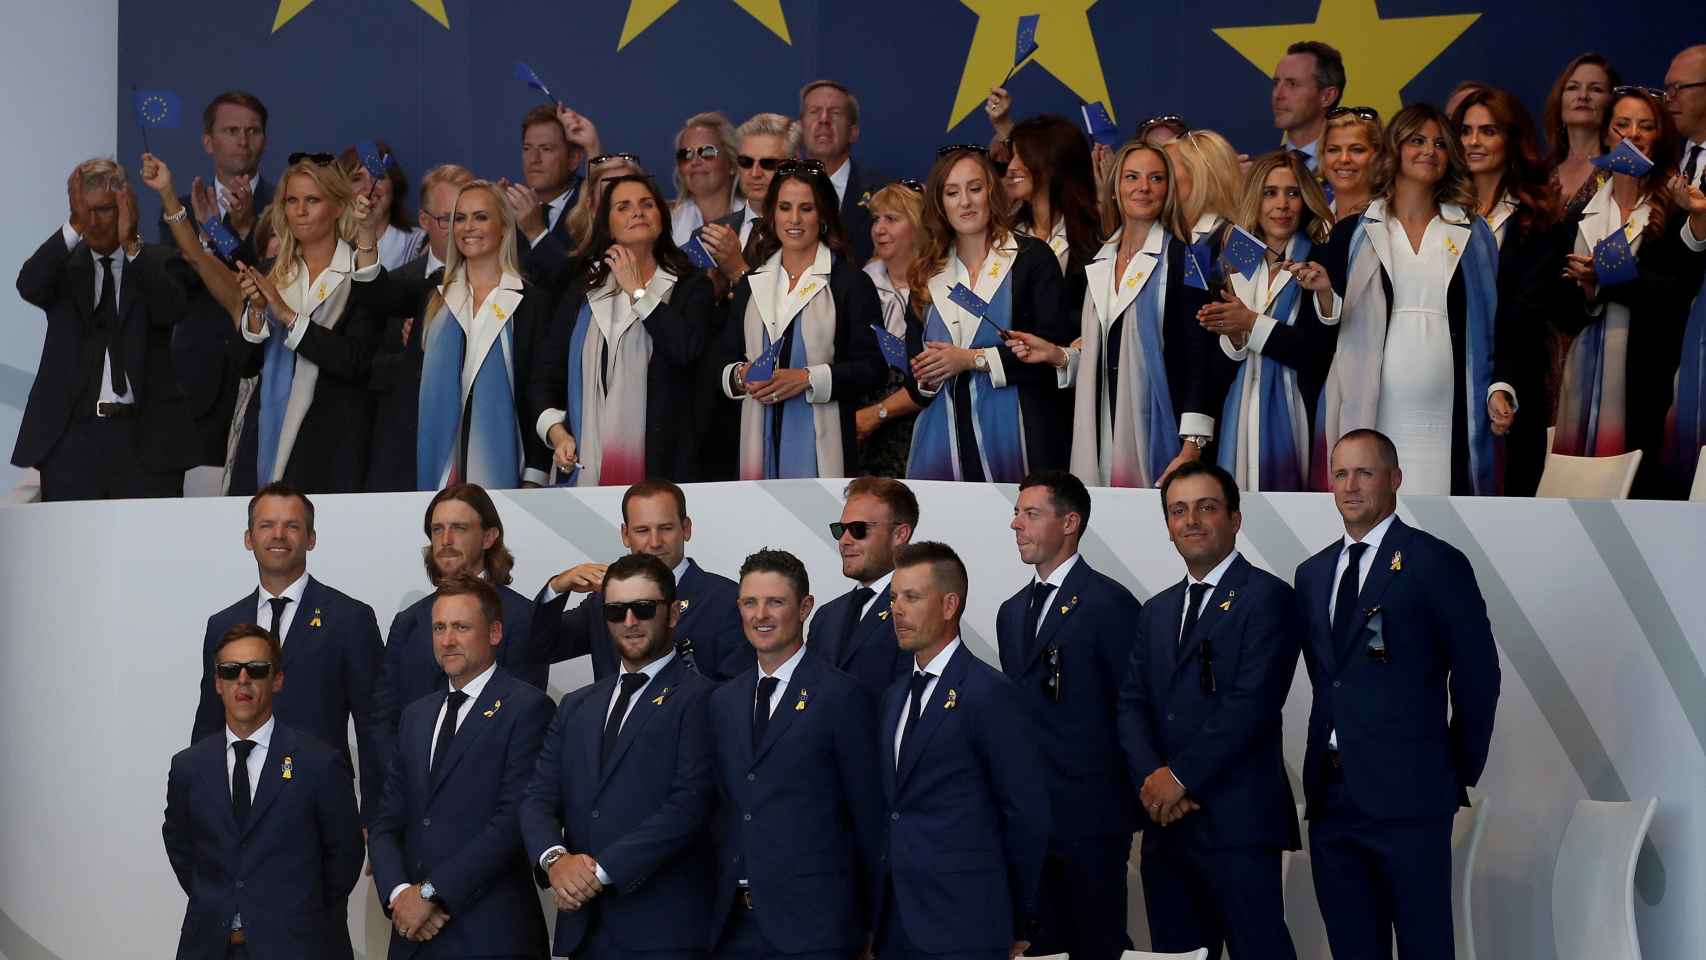 El equipo europeo participa en la ceremonia inaugural de la Ryder Cup 2018